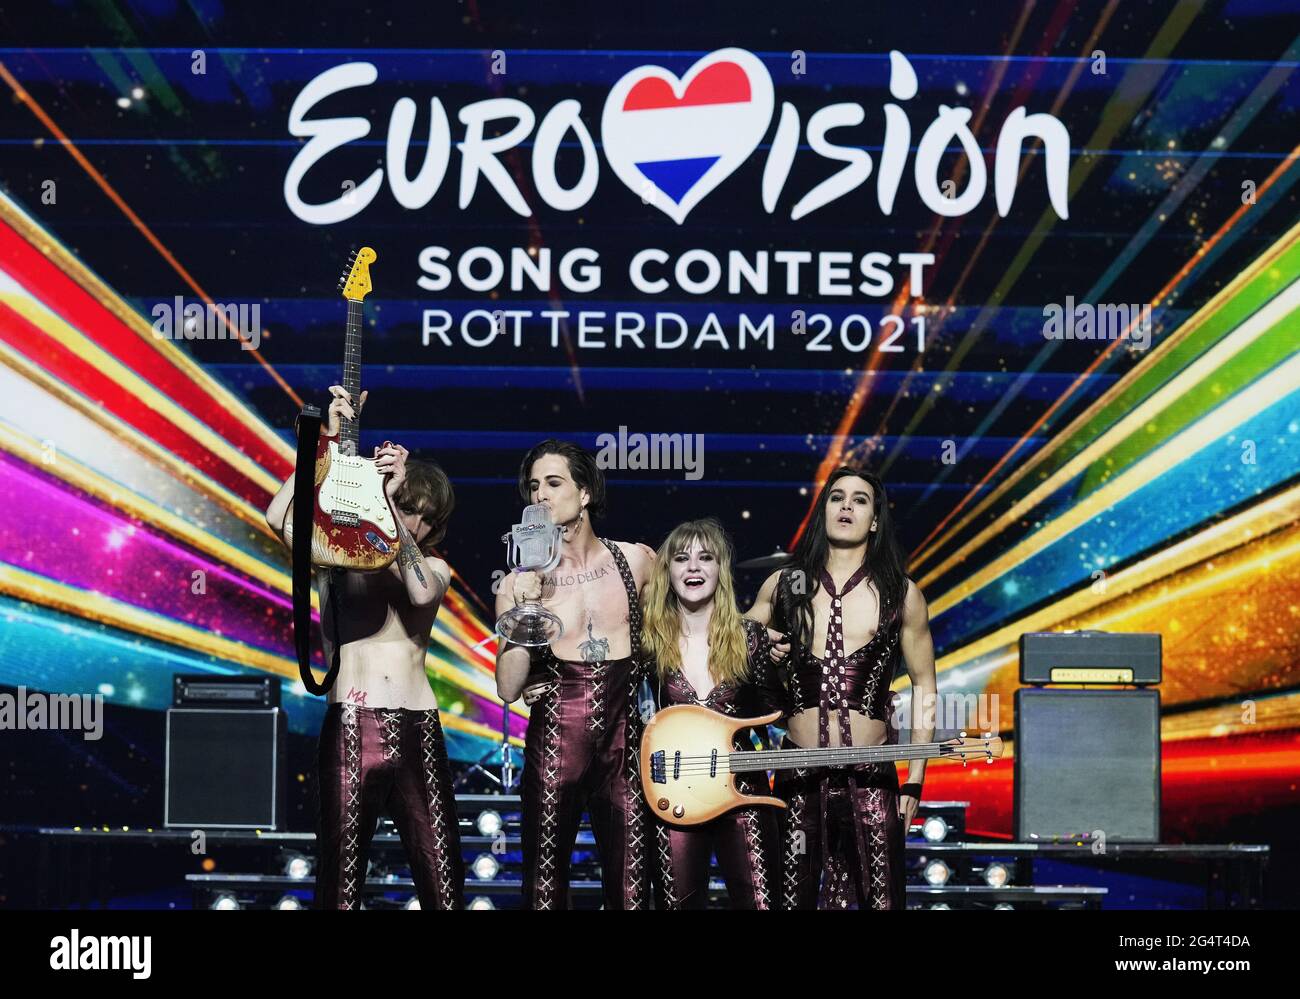 Rotterdam - gagnant Euro Vision Songcontest 2021 - Maneskin combinaison Italie quand: 23 mai 2021 crédit: Bruno Press/WENN **disponible uniquement pour publication au Royaume-Uni** Banque D'Images